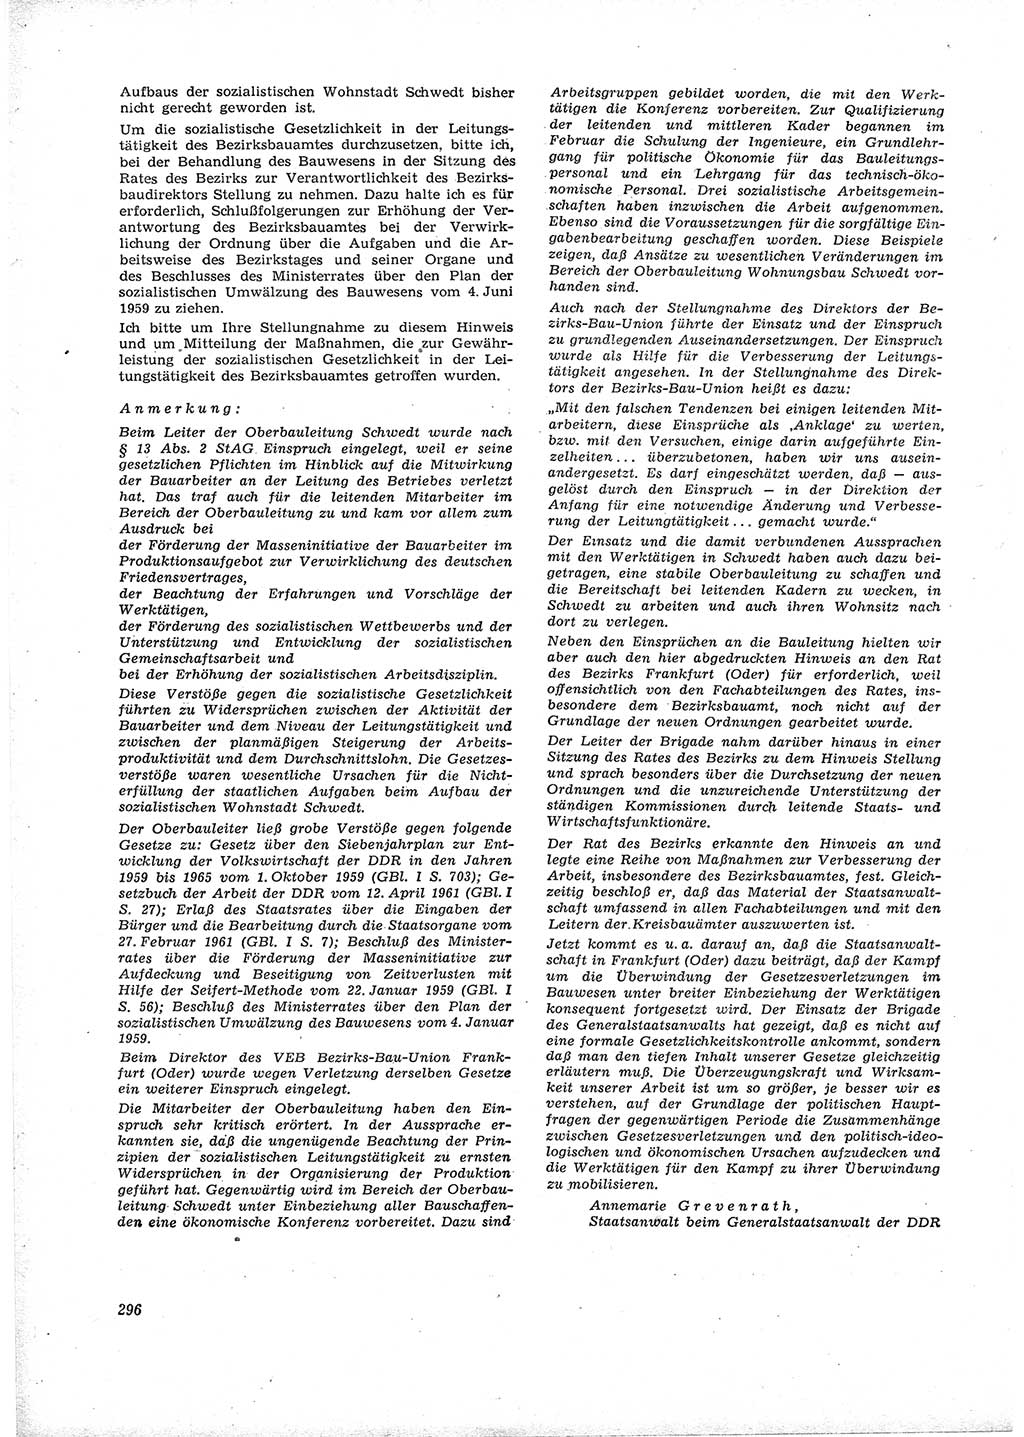 Neue Justiz (NJ), Zeitschrift für Recht und Rechtswissenschaft [Deutsche Demokratische Republik (DDR)], 16. Jahrgang 1962, Seite 296 (NJ DDR 1962, S. 296)